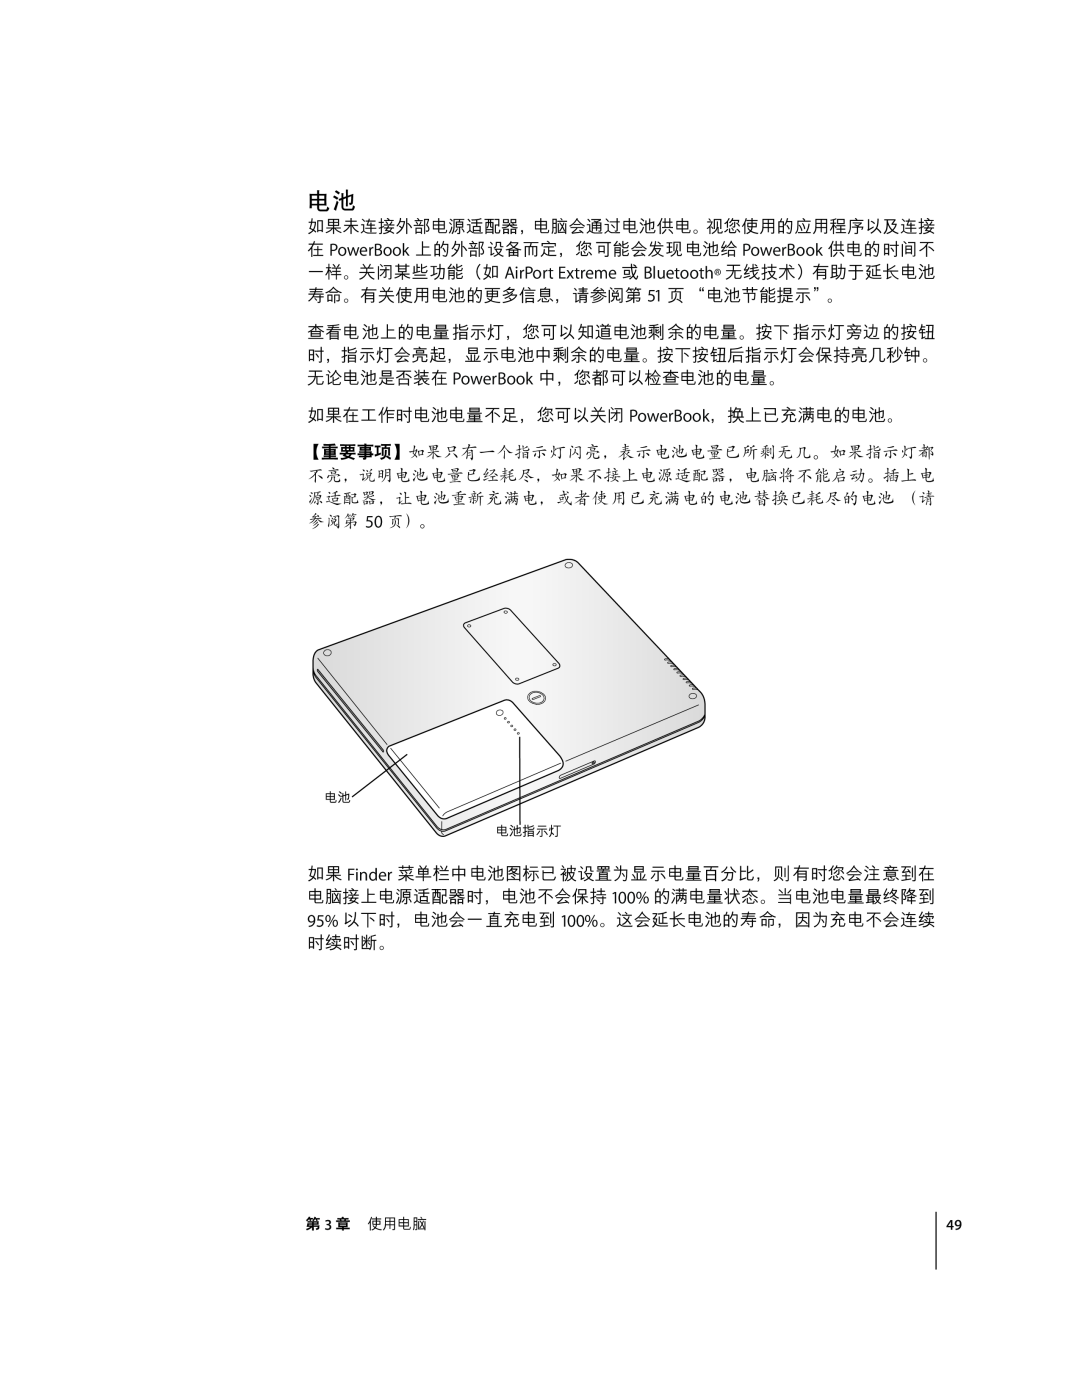 Apple G4 12 manual ÃhæçÉÚÛ¾ÙÉ÷Pû¾ÉÊÂÉu¯åEæç 